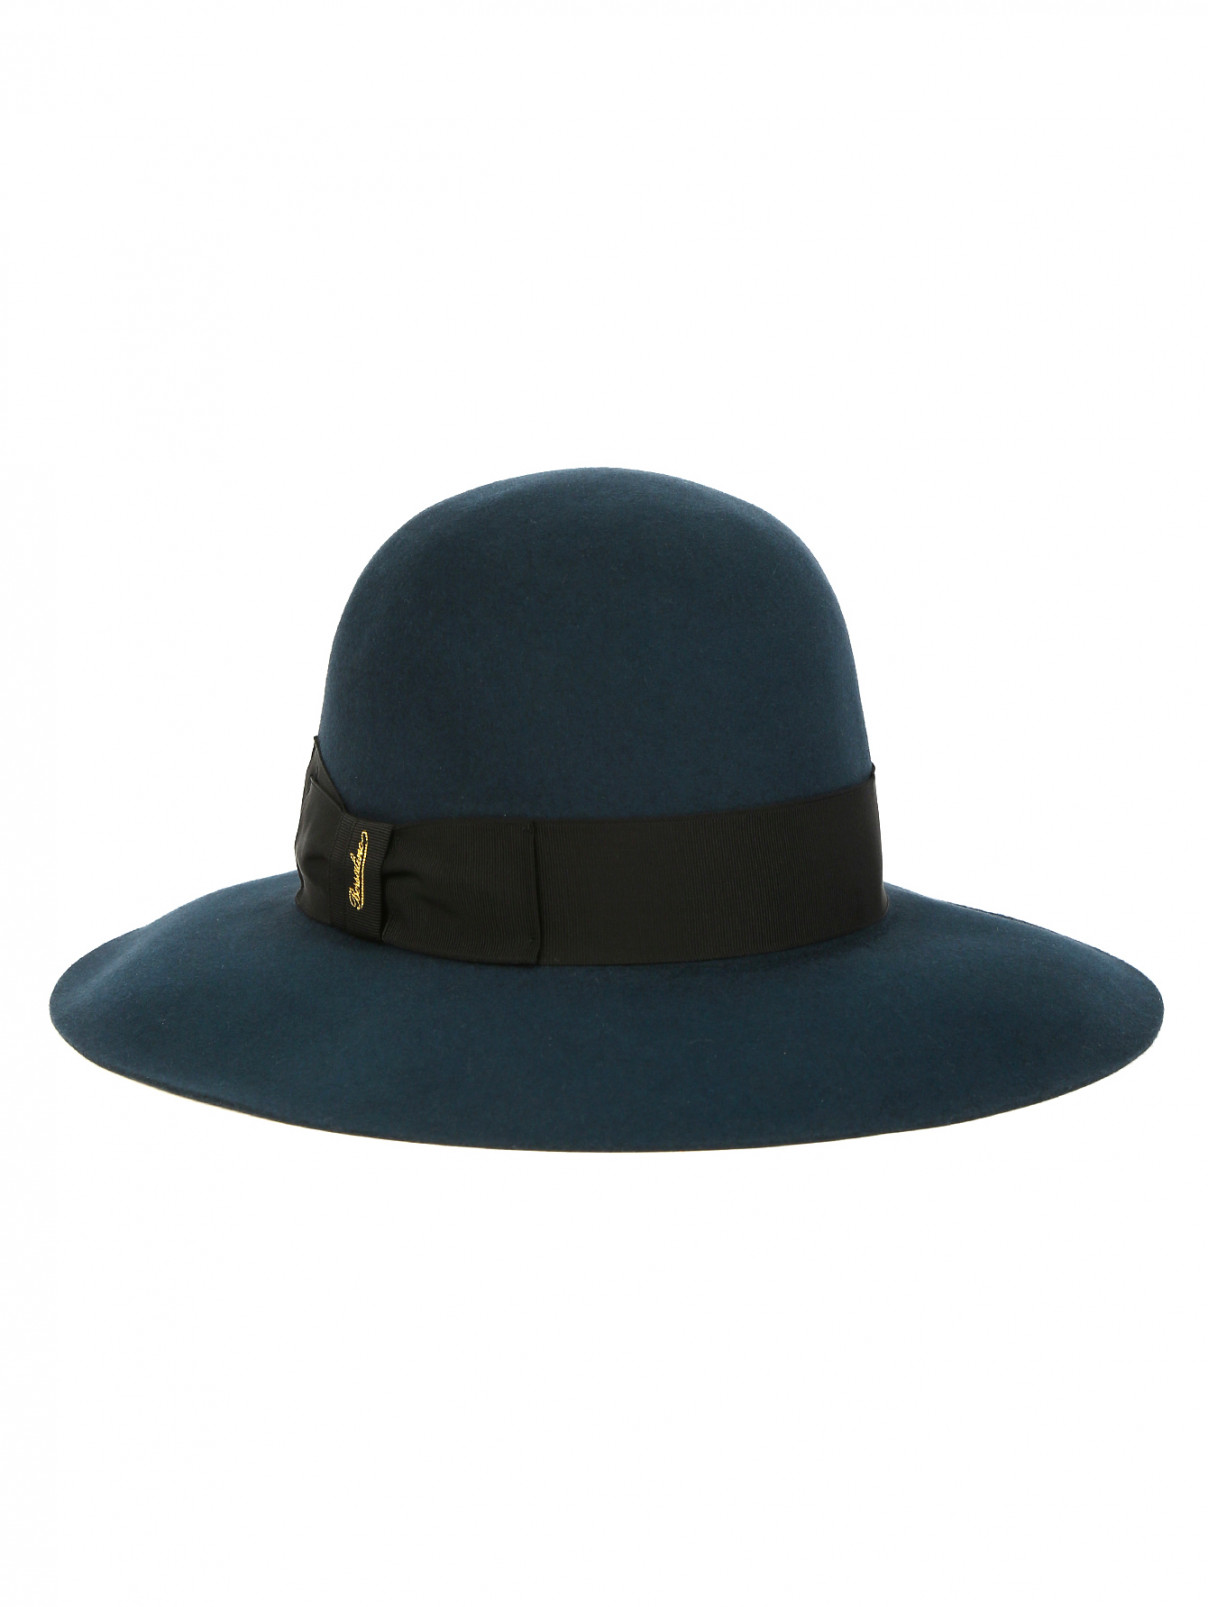 Однотонная шляпа из фетра с текстильной отделкой Borsalino  –  Общий вид  – Цвет:  Зеленый